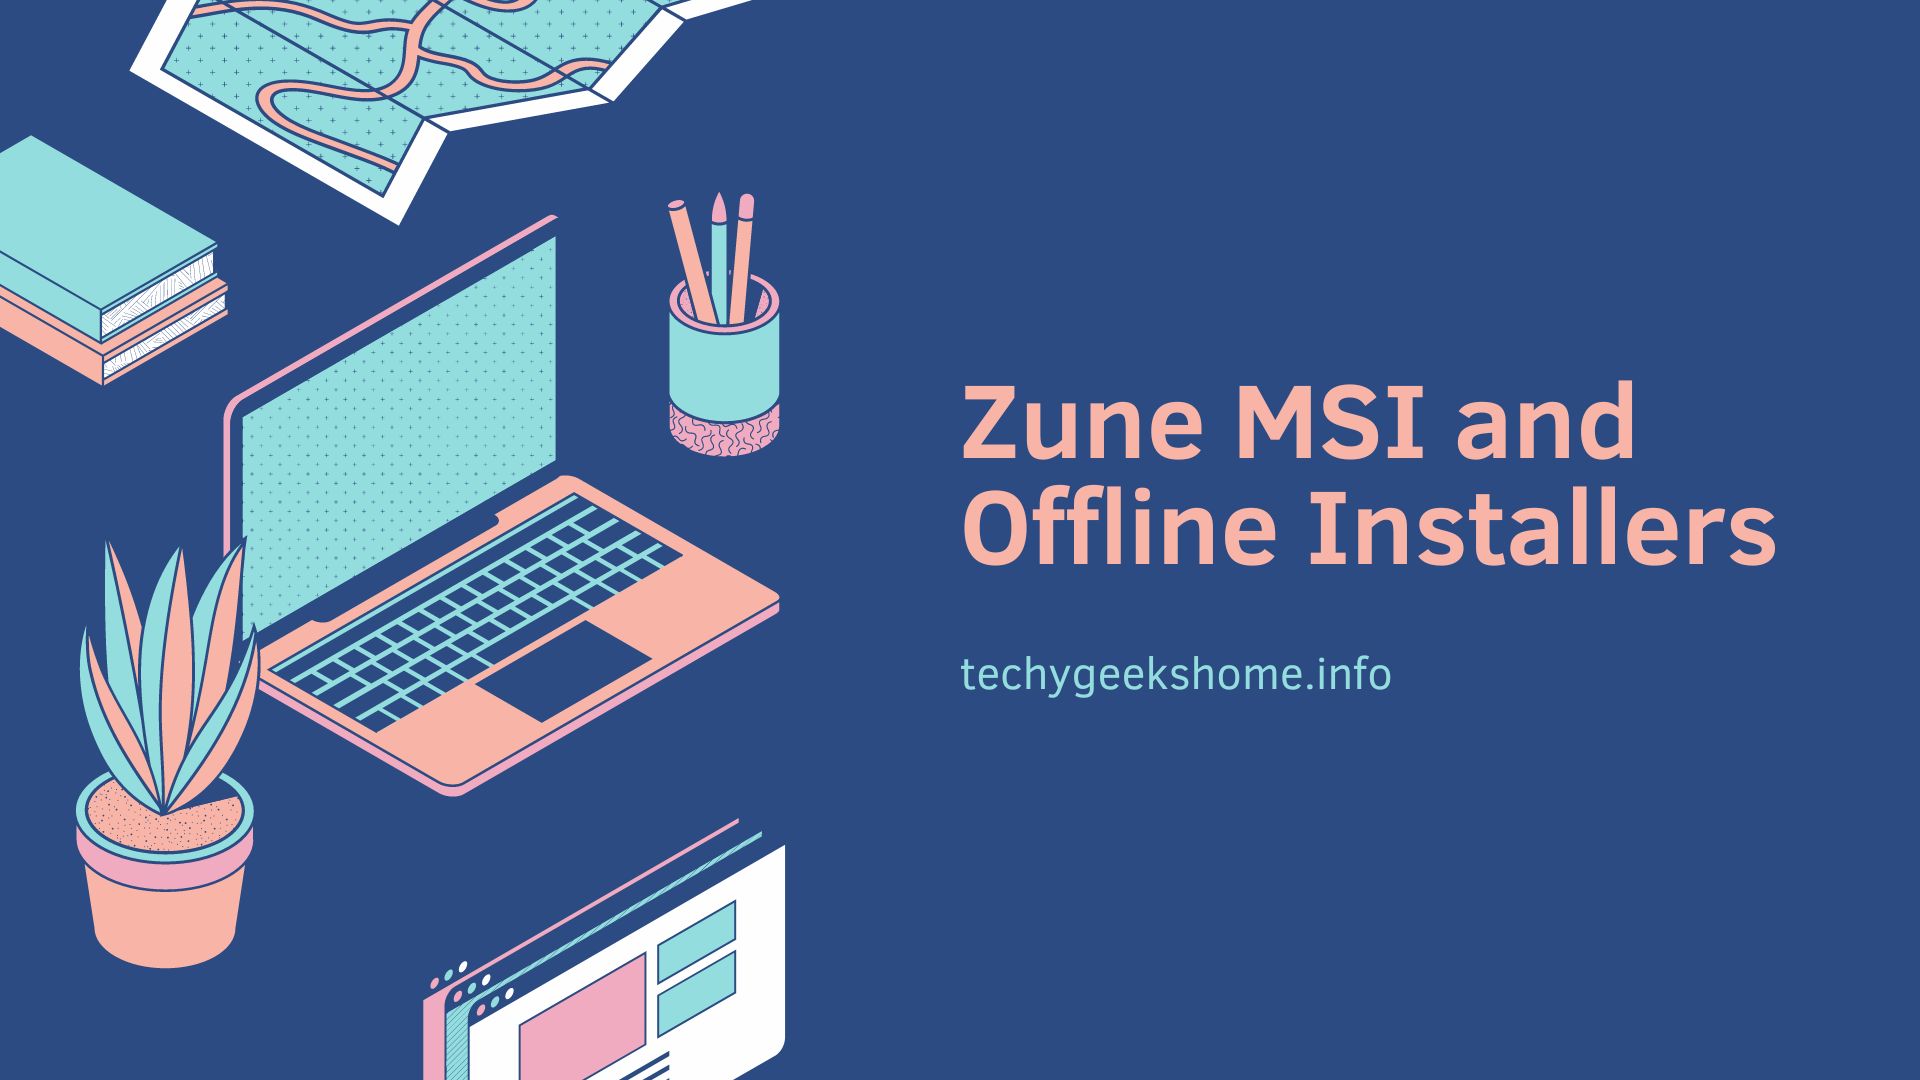 Zune MSI and Offline Installers